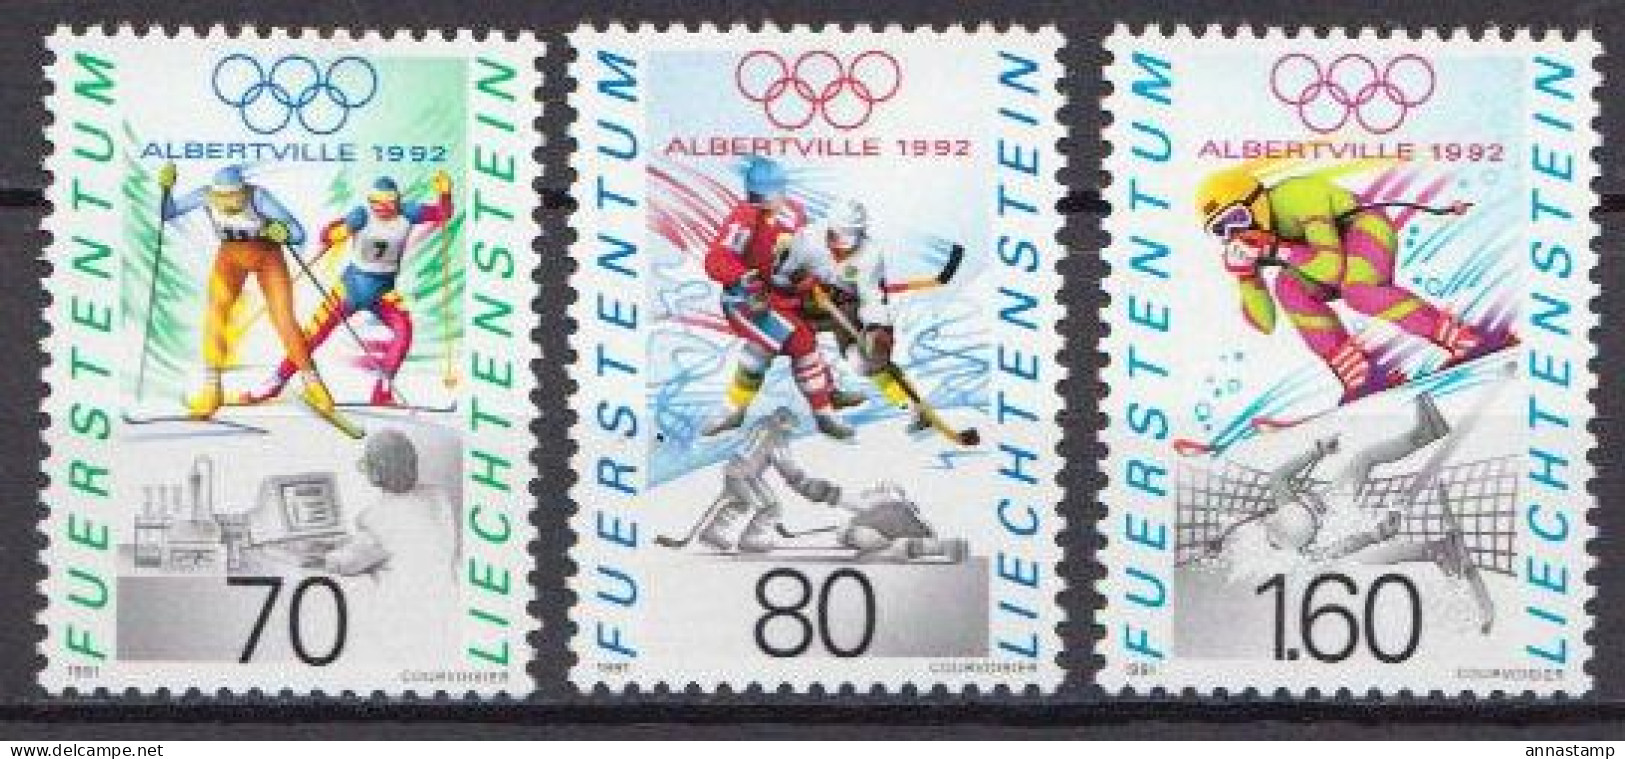 Liechtenstein MNH Set - Winter 1992: Albertville